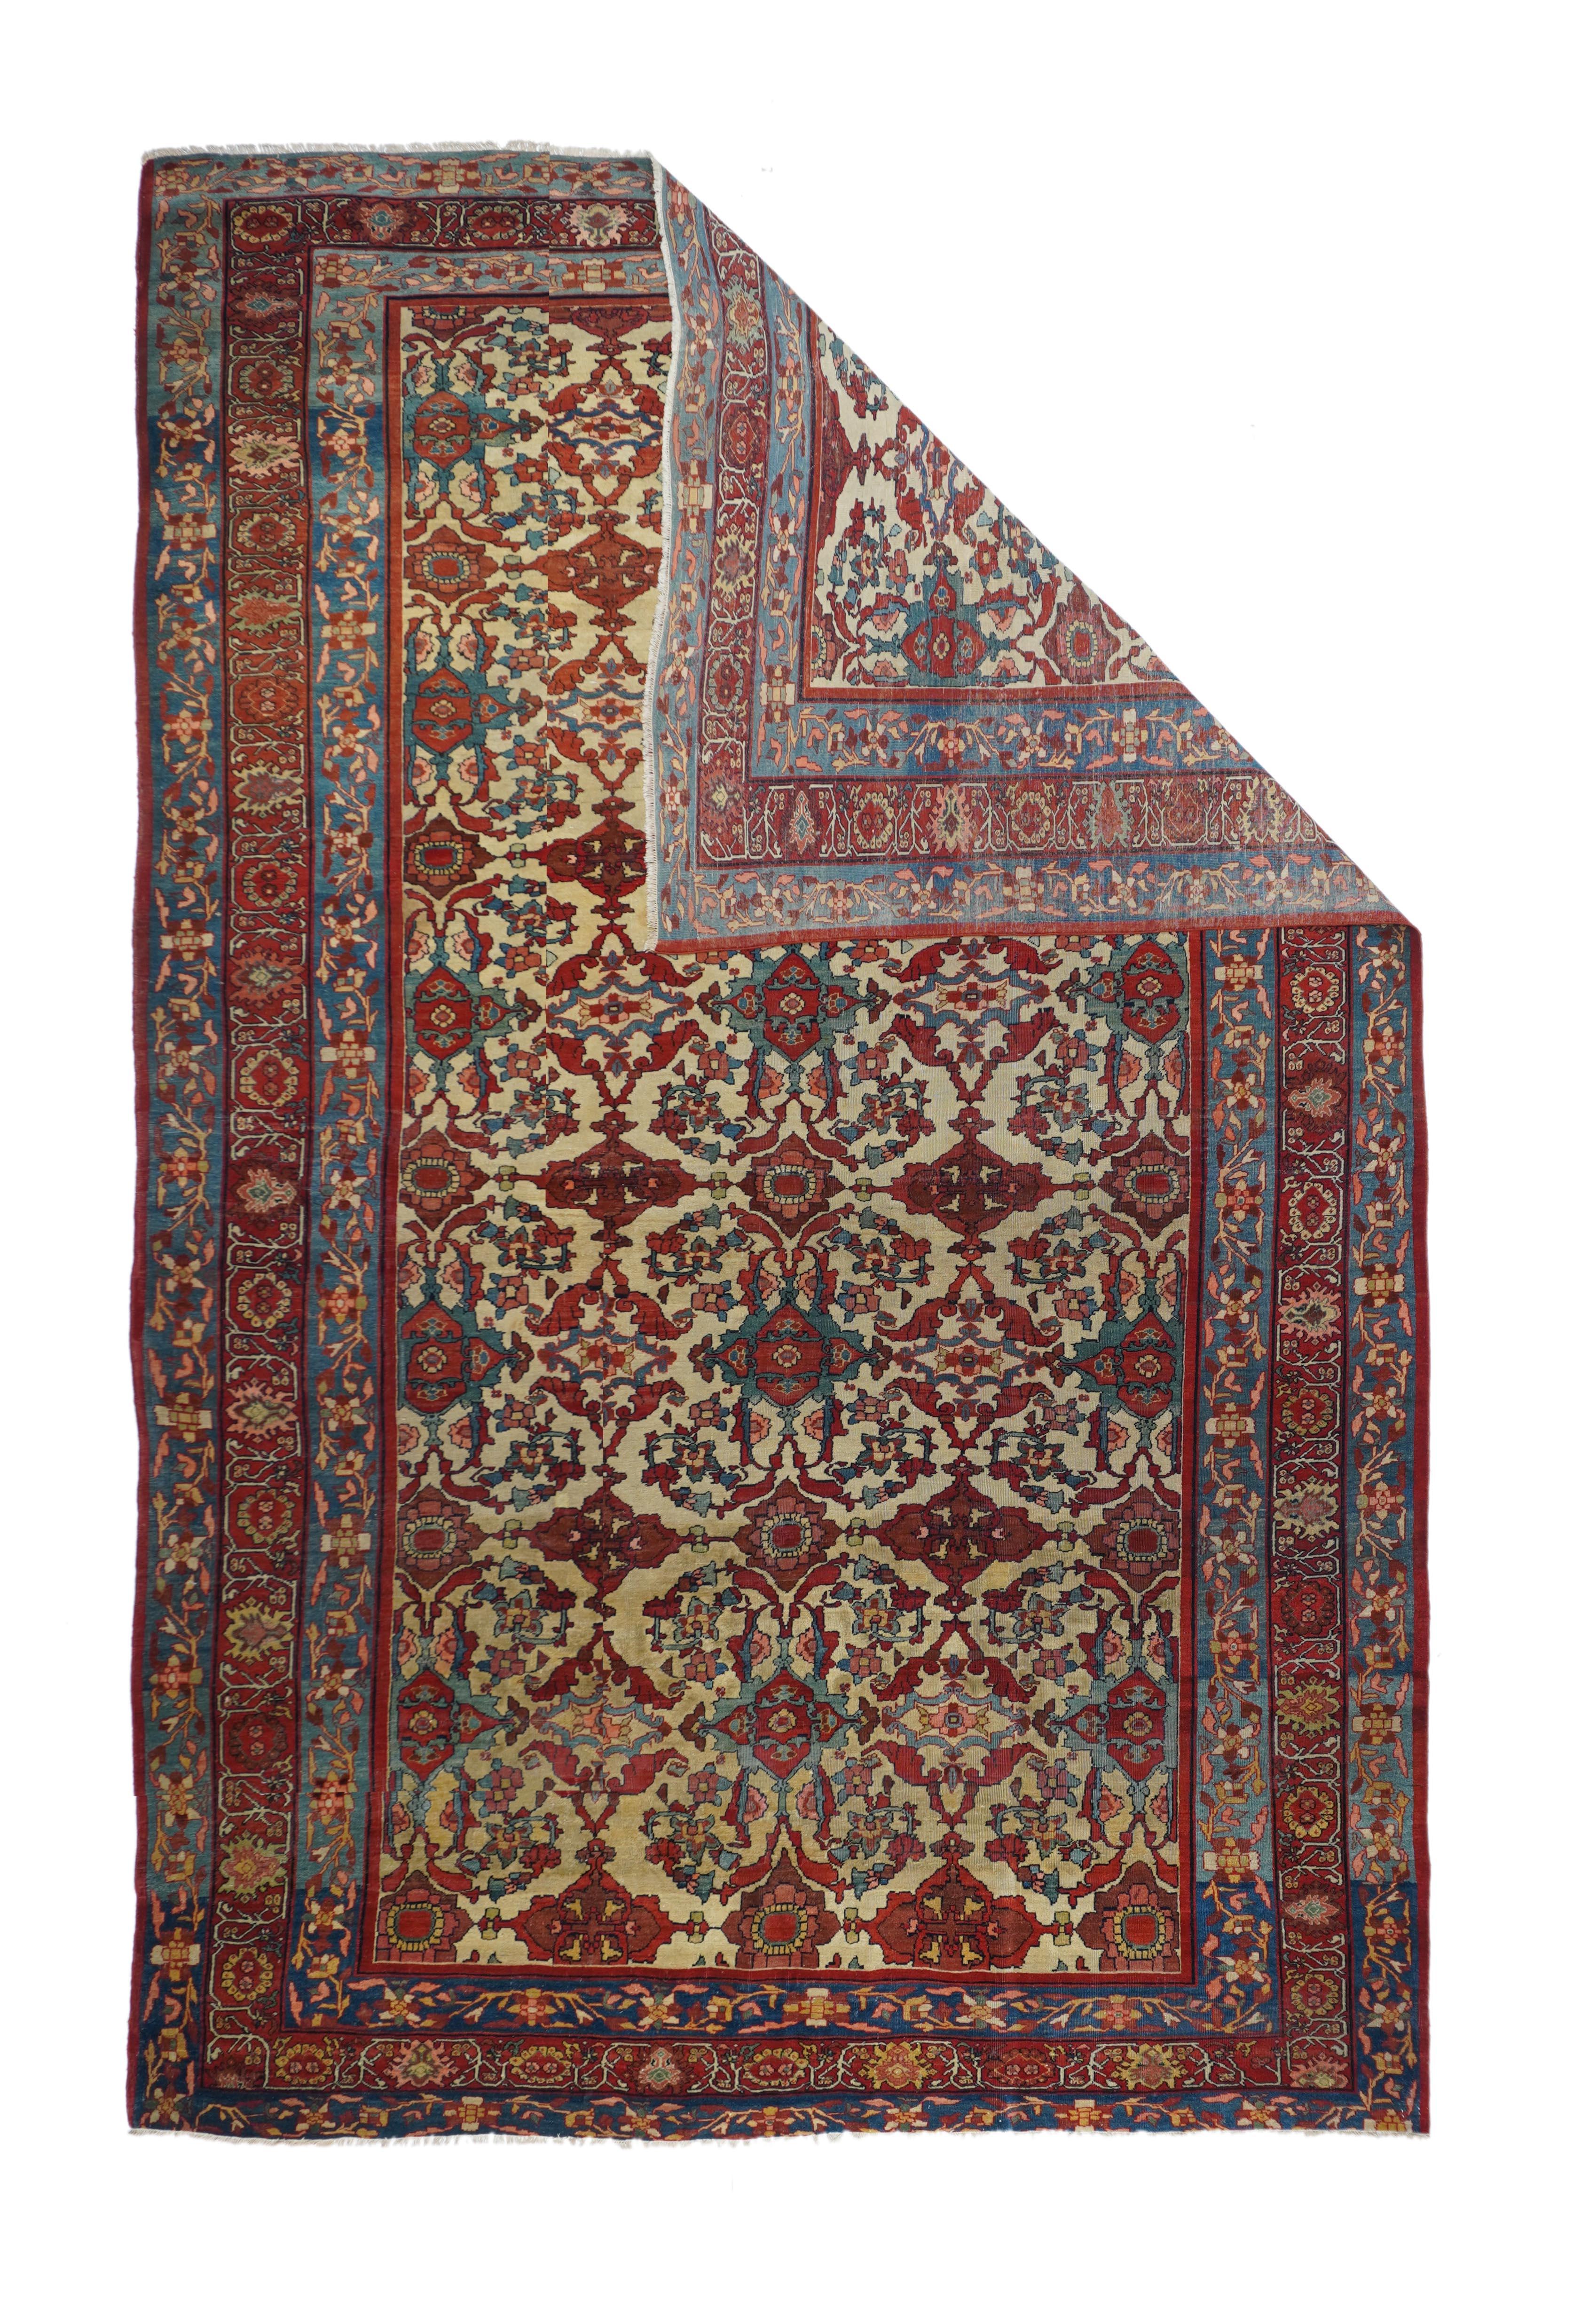 Antique Farahan Sarouk rug 6'6'' x 10'1''.